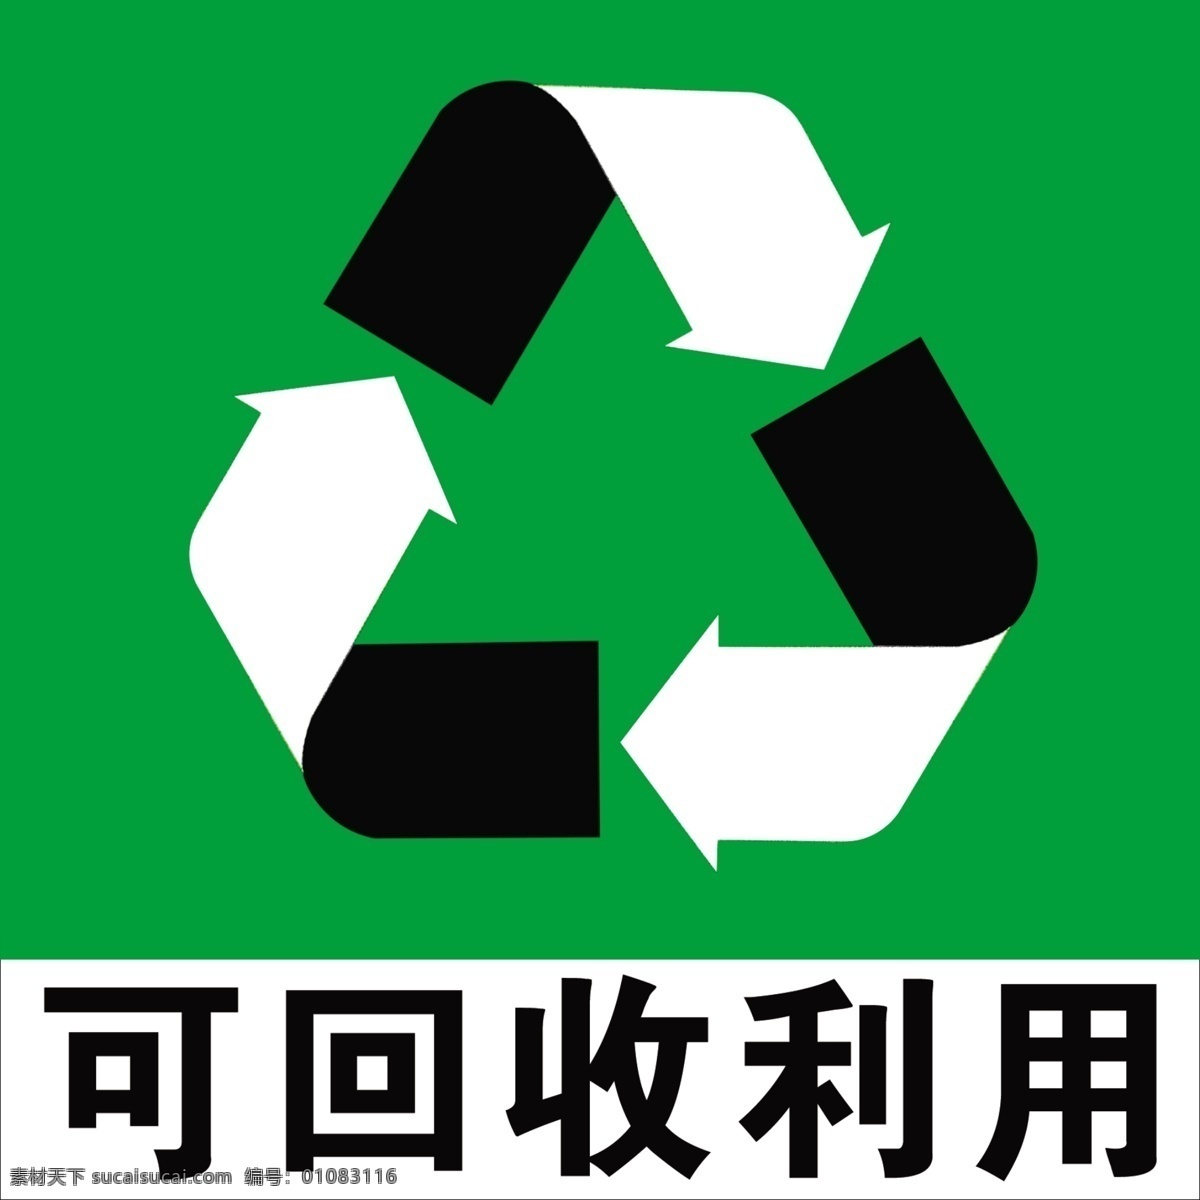 可回收利用 回收 利用 标识 分层 源文件